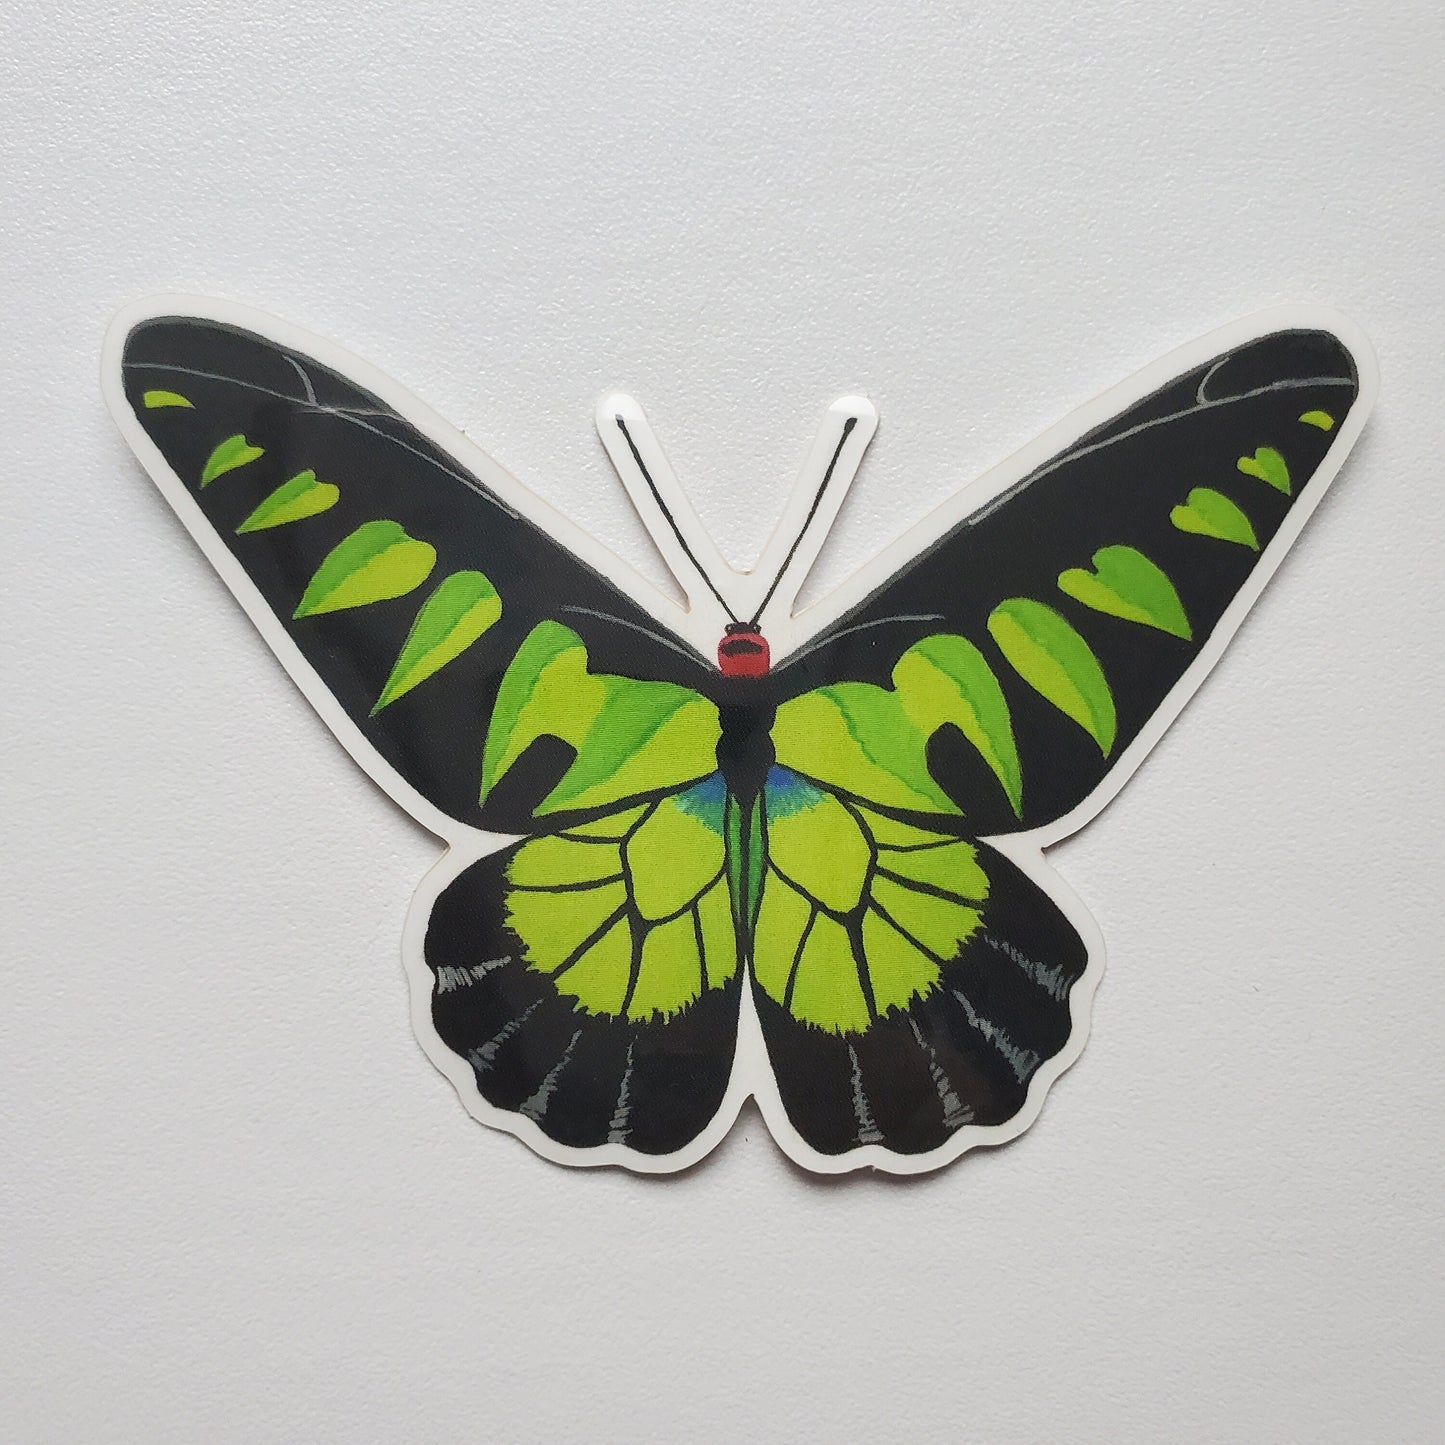 Rajah Brooke's Birdwing Butterfly Sticker